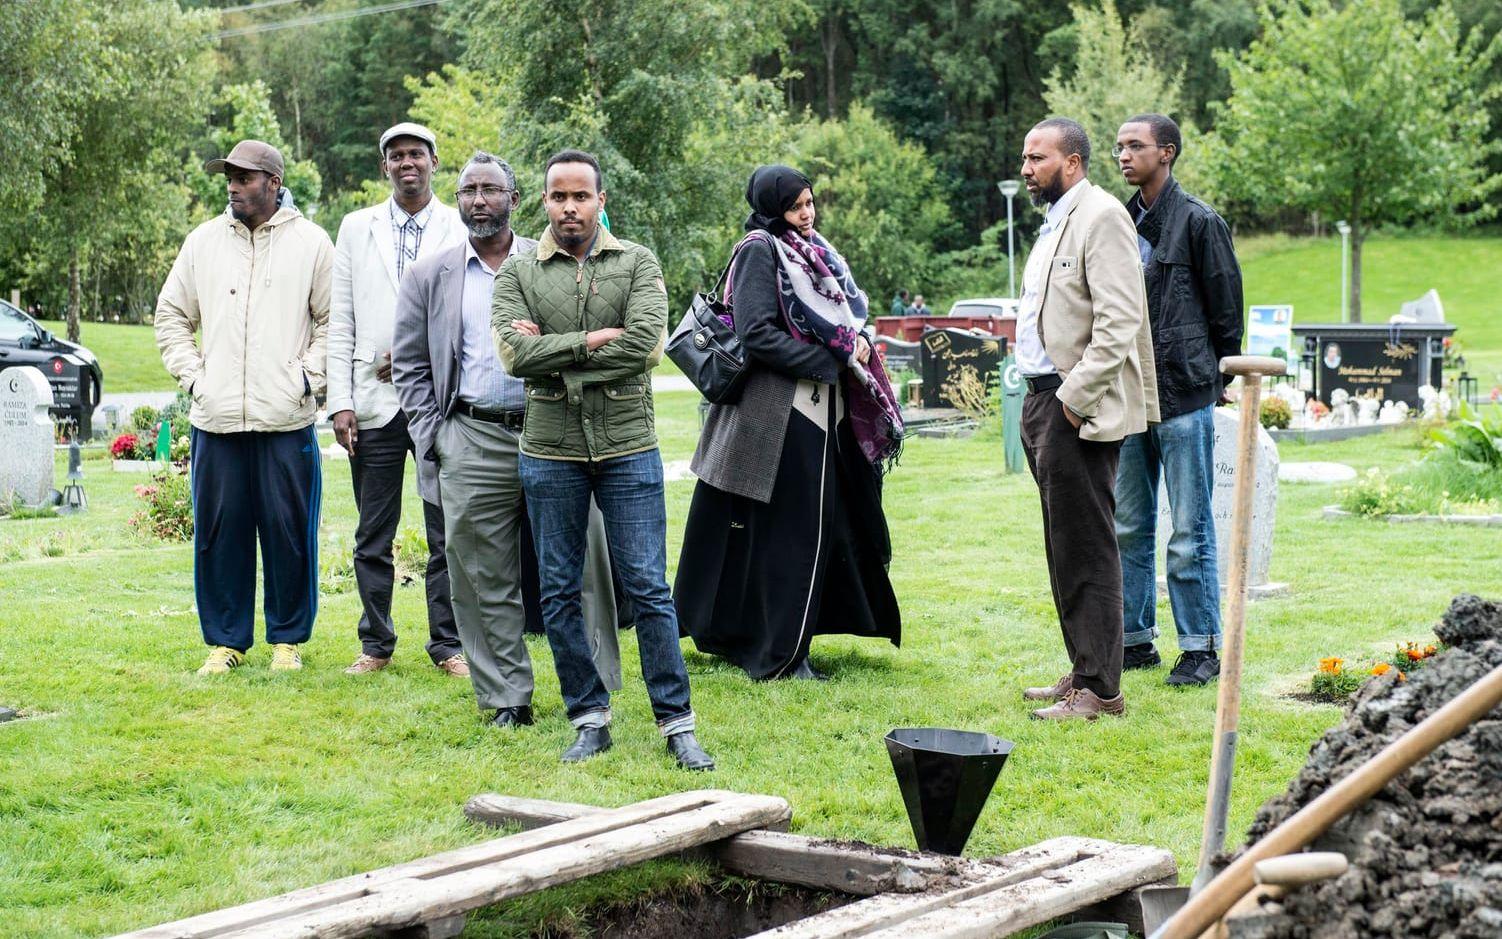 Yusuufs pappa, Abdiwahid Warsame flög in från Storbritannien för att begrava sin son. Bild: Stefan Berg